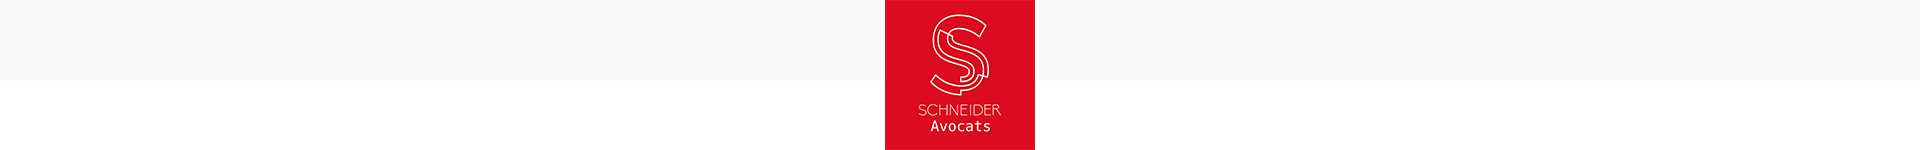 Schneider Avocats Droit Immobilier Spécialiste Droit Urbanisme Droit Public Montpellier